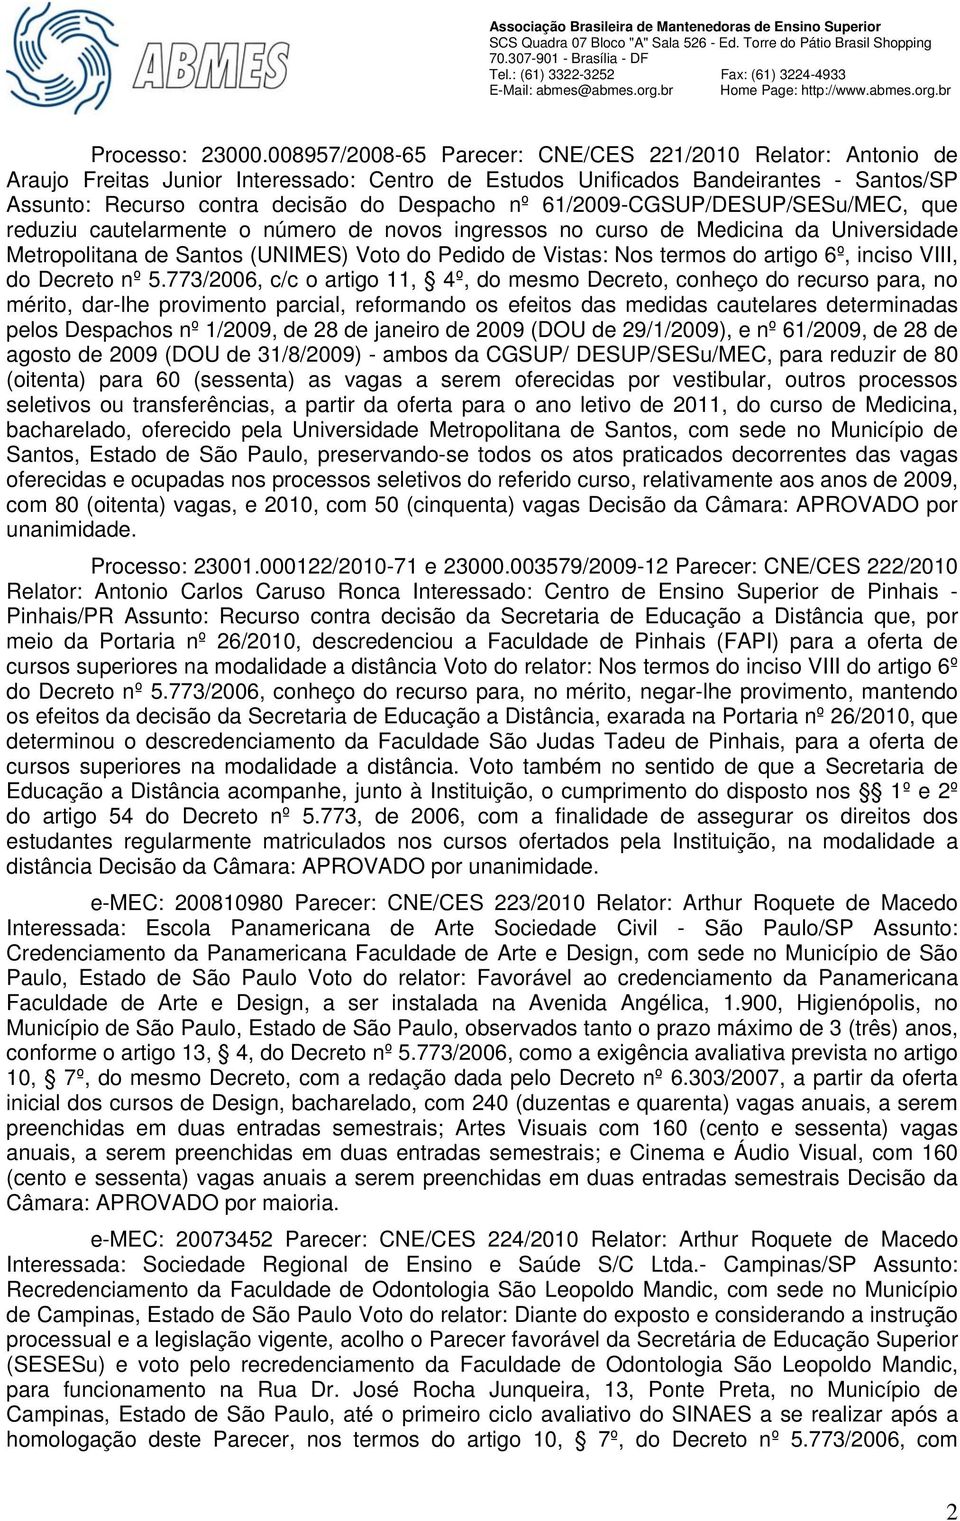 61/2009-CGSUP/DESUP/SESu/MEC, que reduziu cautelarmente o número de novos ingressos no curso de Medicina da Universidade Metropolitana de Santos (UNIMES) Voto do Pedido de Vistas: Nos termos do